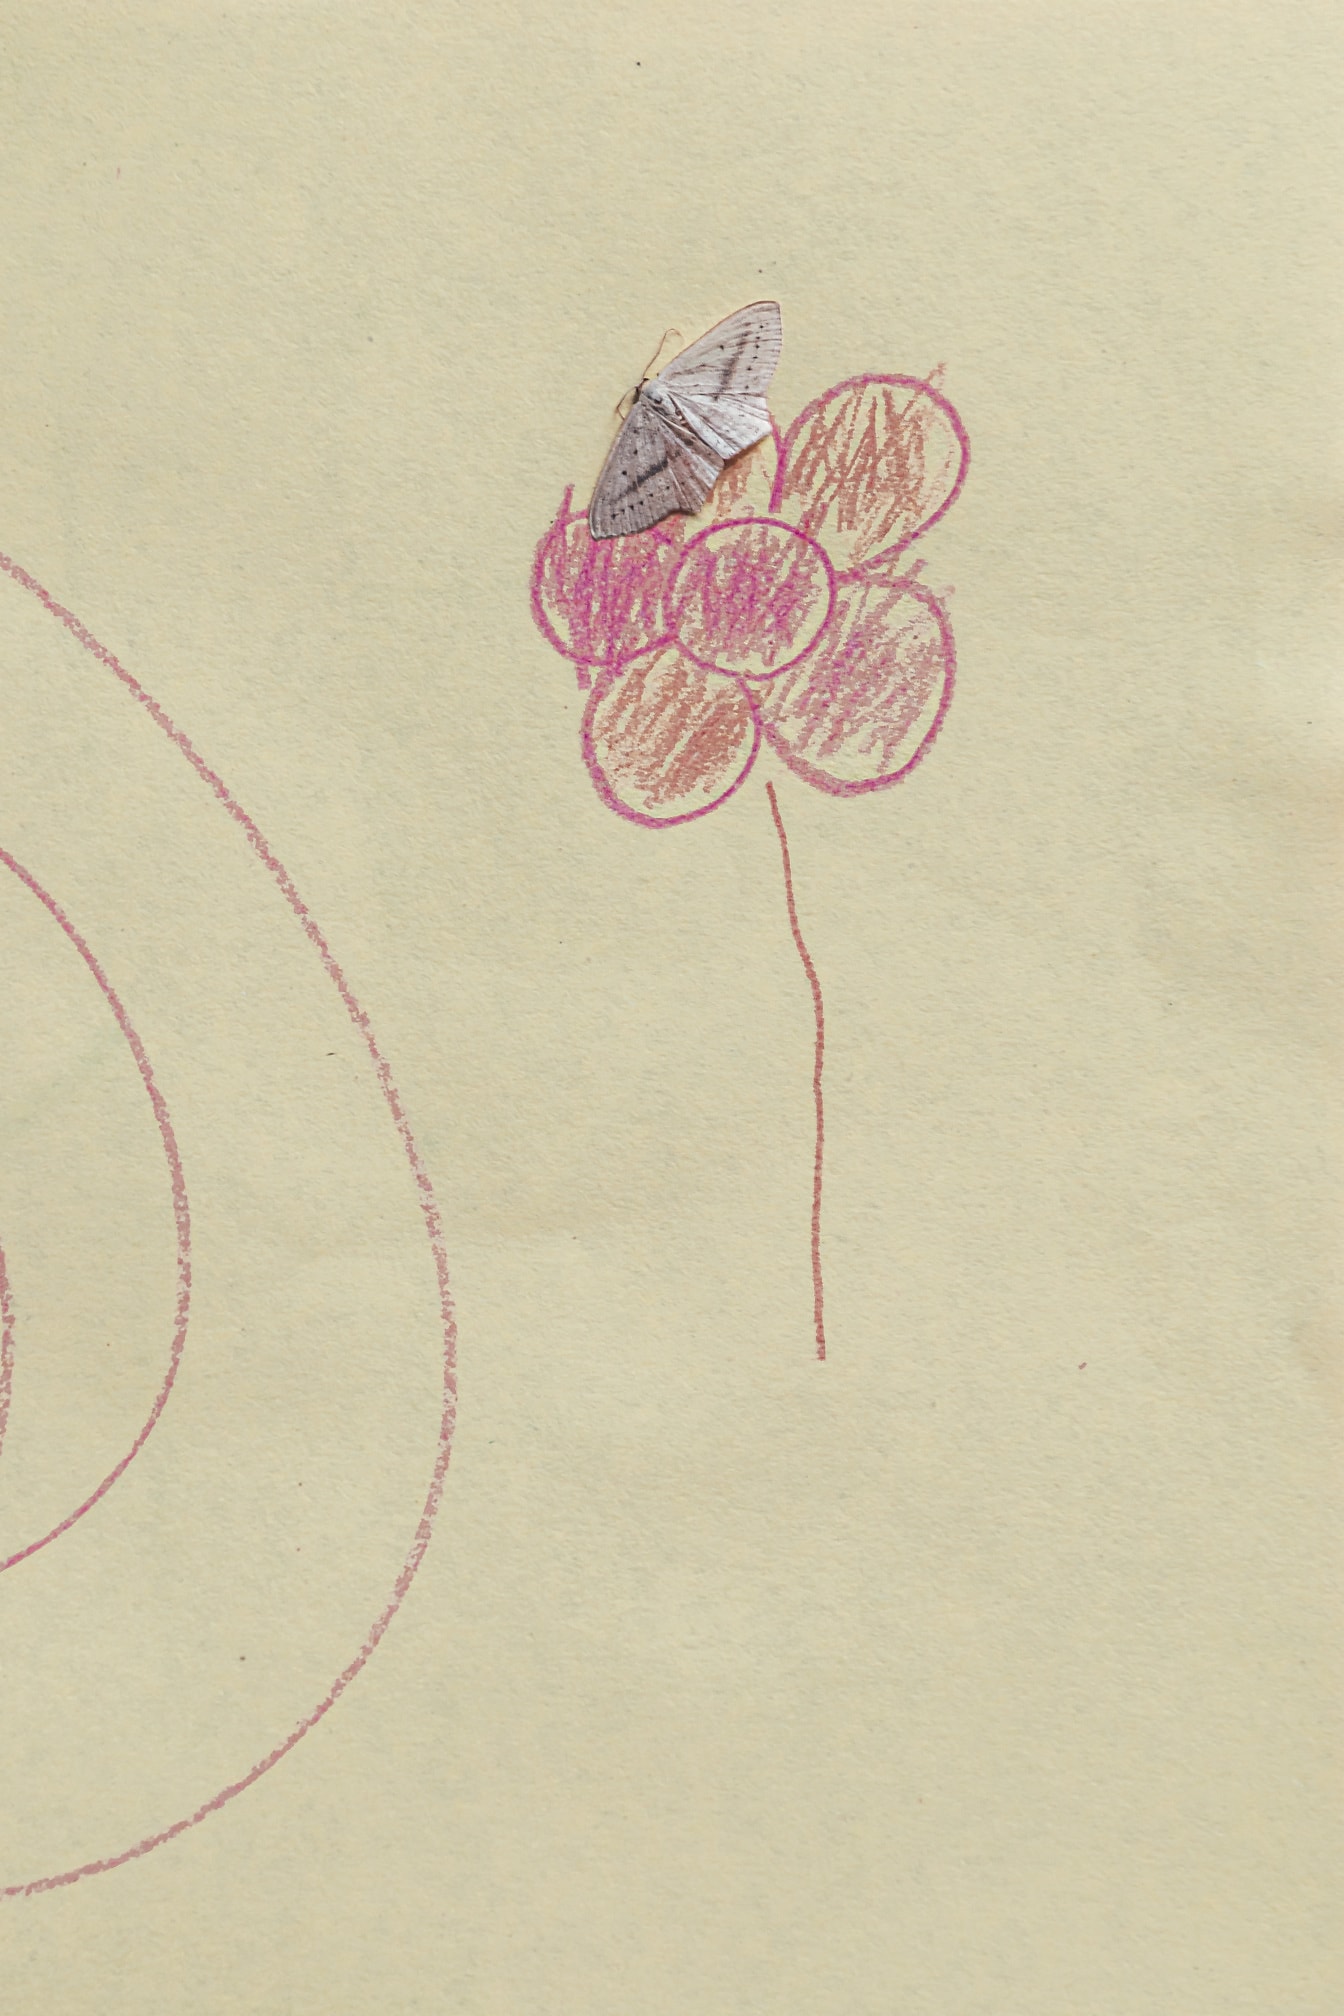 Lille hvid sommerfugl på papir med tegning af lyserød blomst